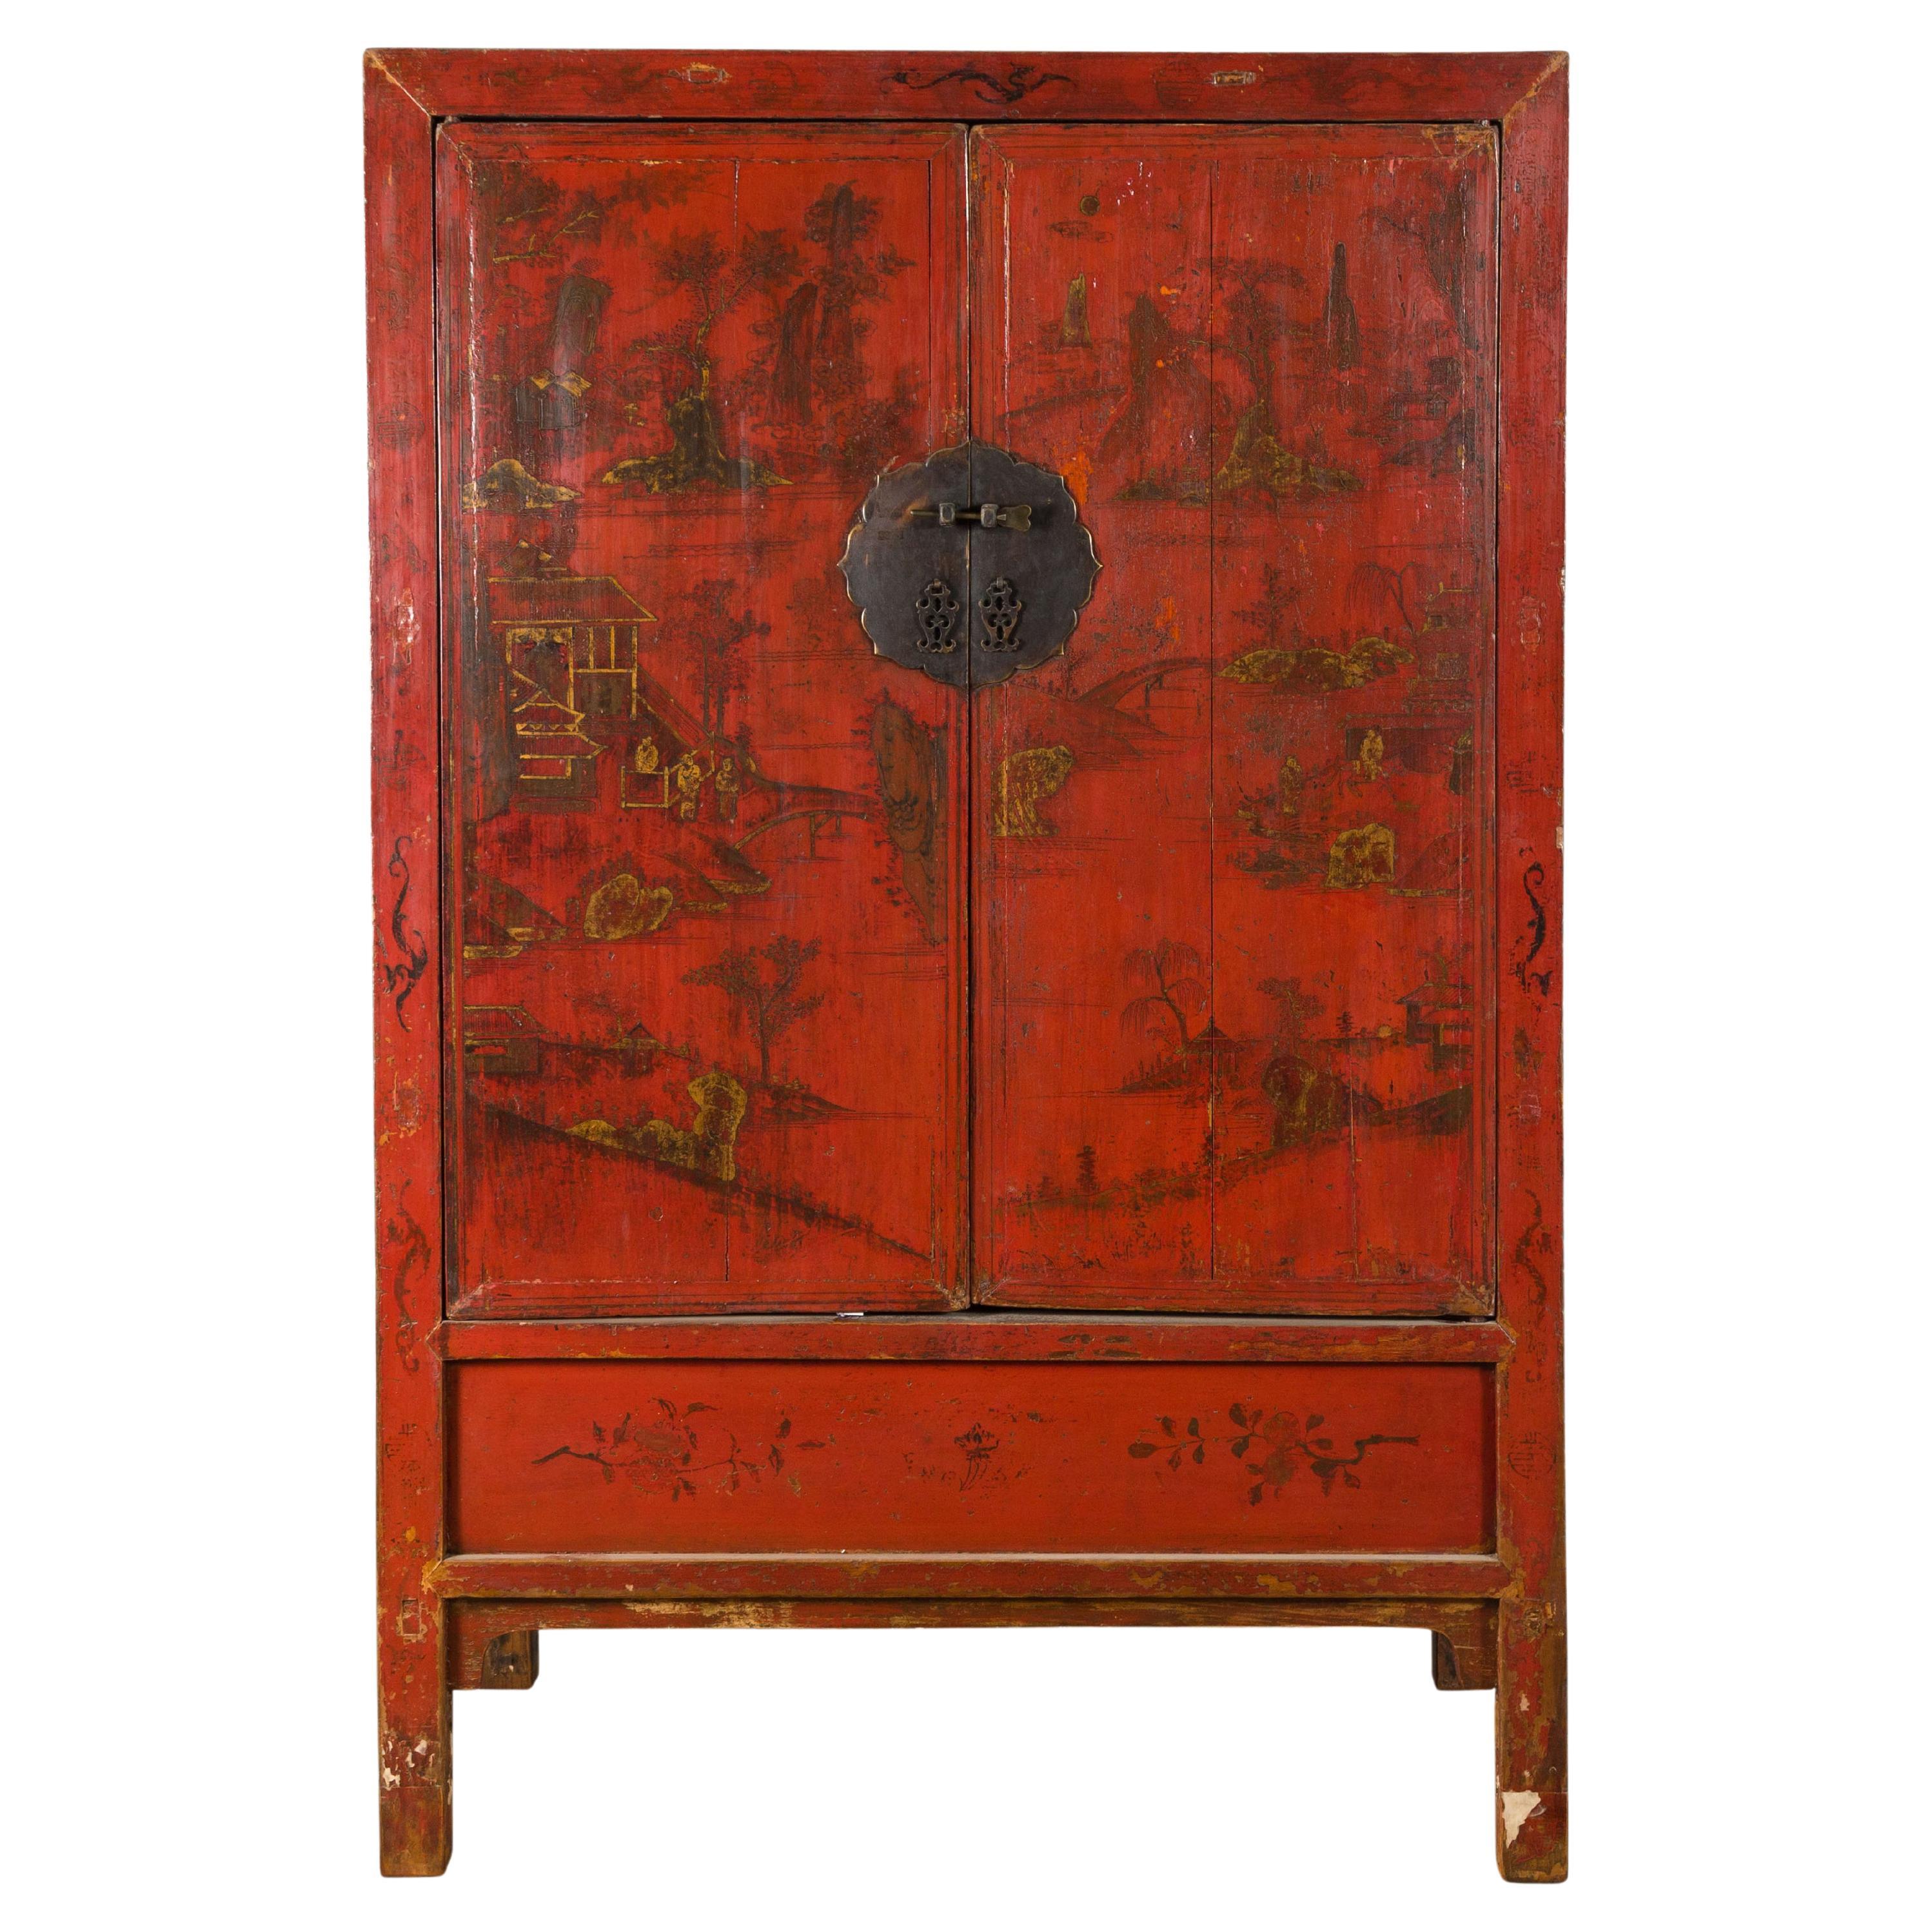 Cabinet peint à la main de la dynastie Qing du 19ème siècle avec laque rouge originale